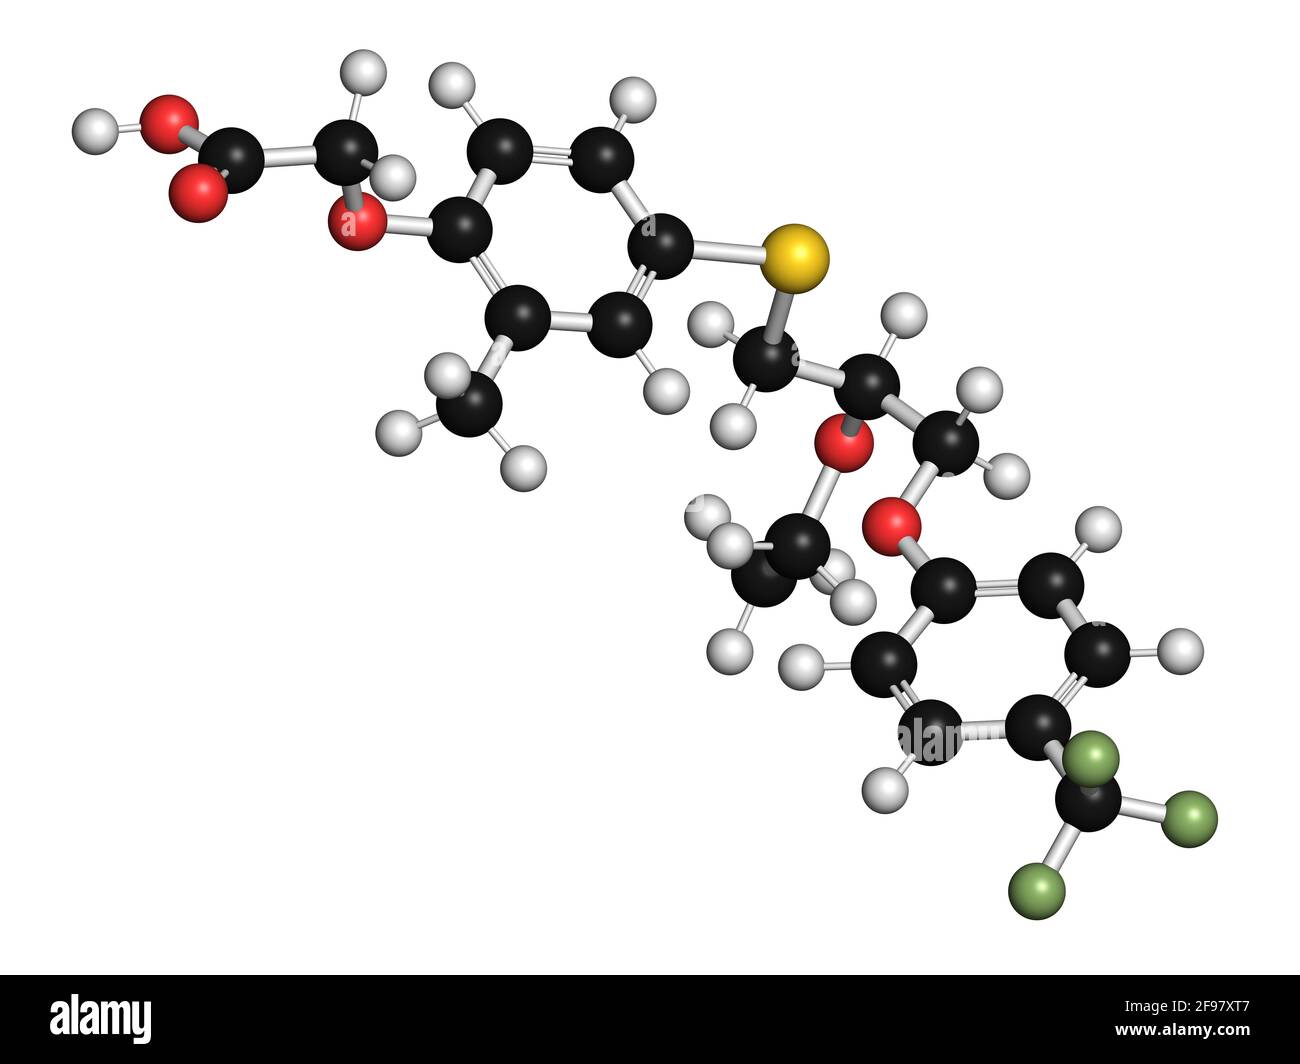 Molecola di farmaco Seladelpar, illustrazione Foto Stock